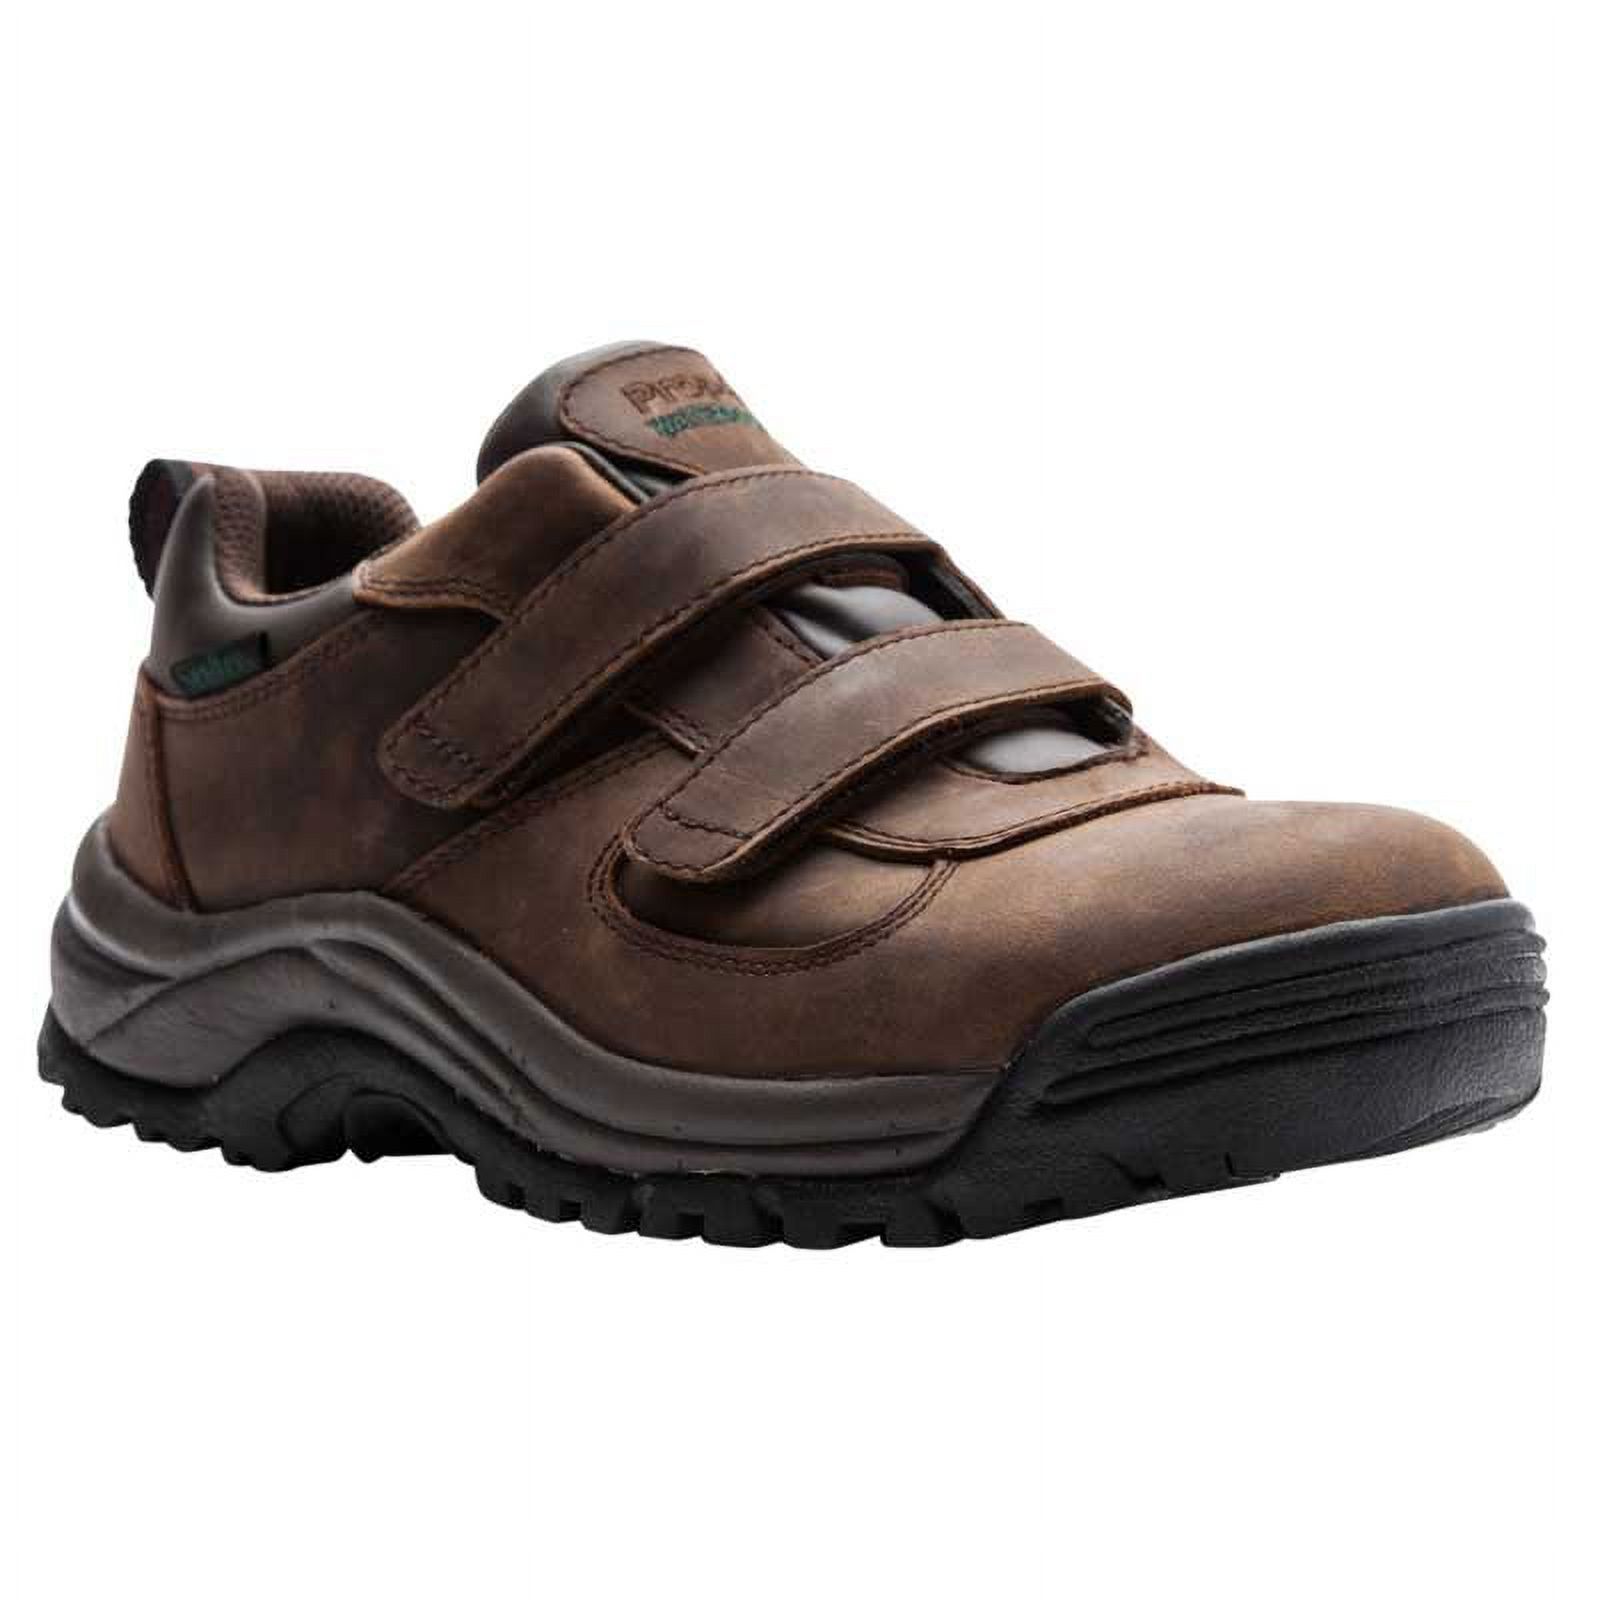 Propet Men's Cliff Walker Low Strap Waterproof Walking Shoe Black Leather - MBA023LBLK - image 2 of 2